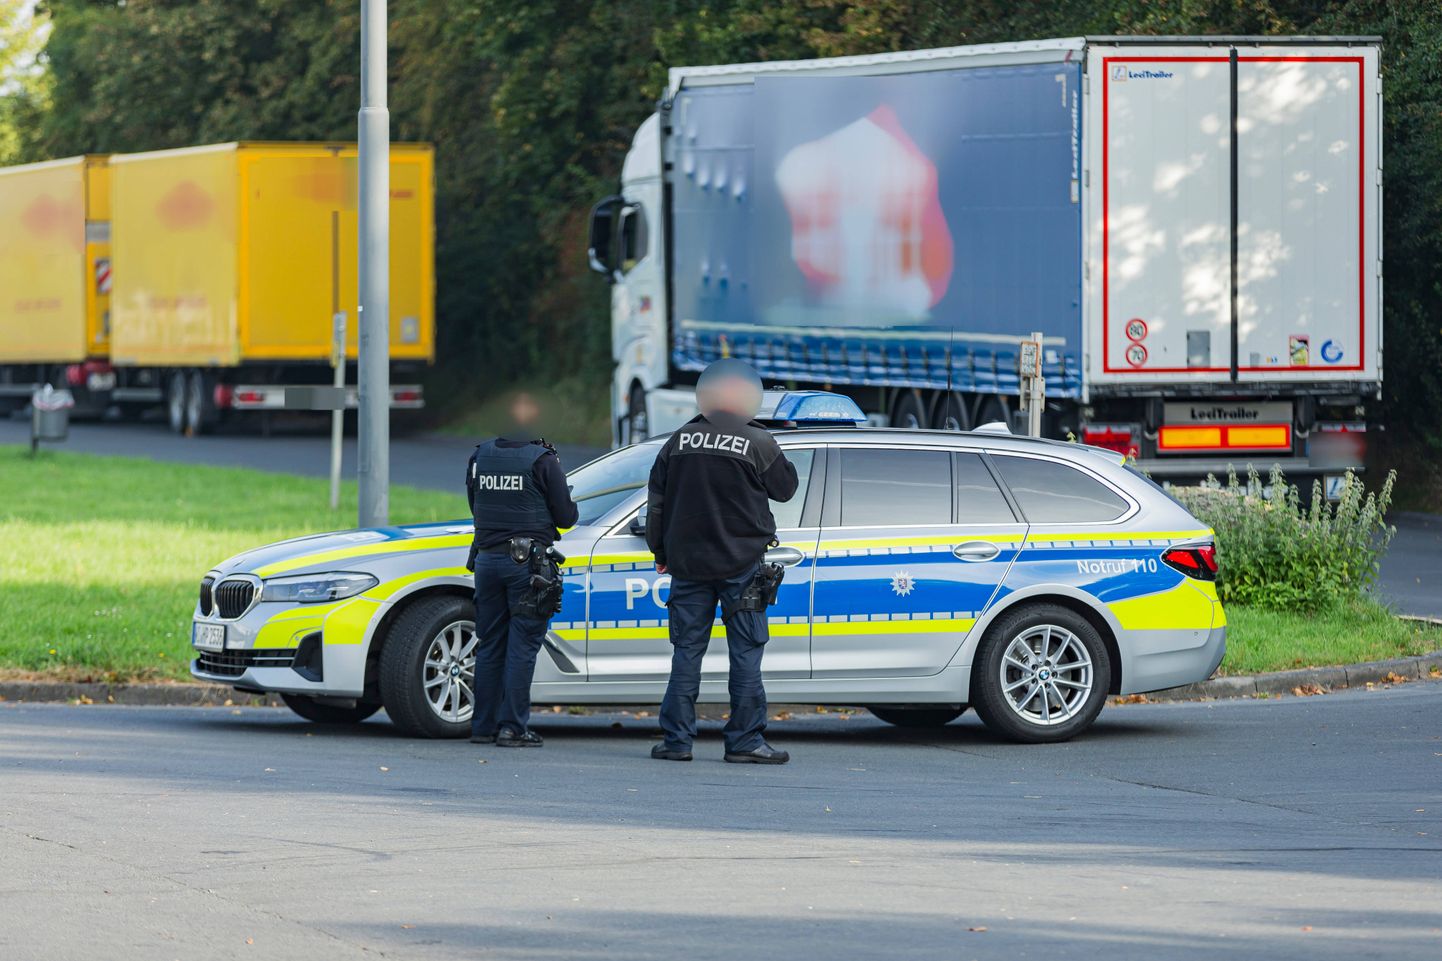 Немецкие полицейские проводят проверку на дорогах.Иллюстративное фото.